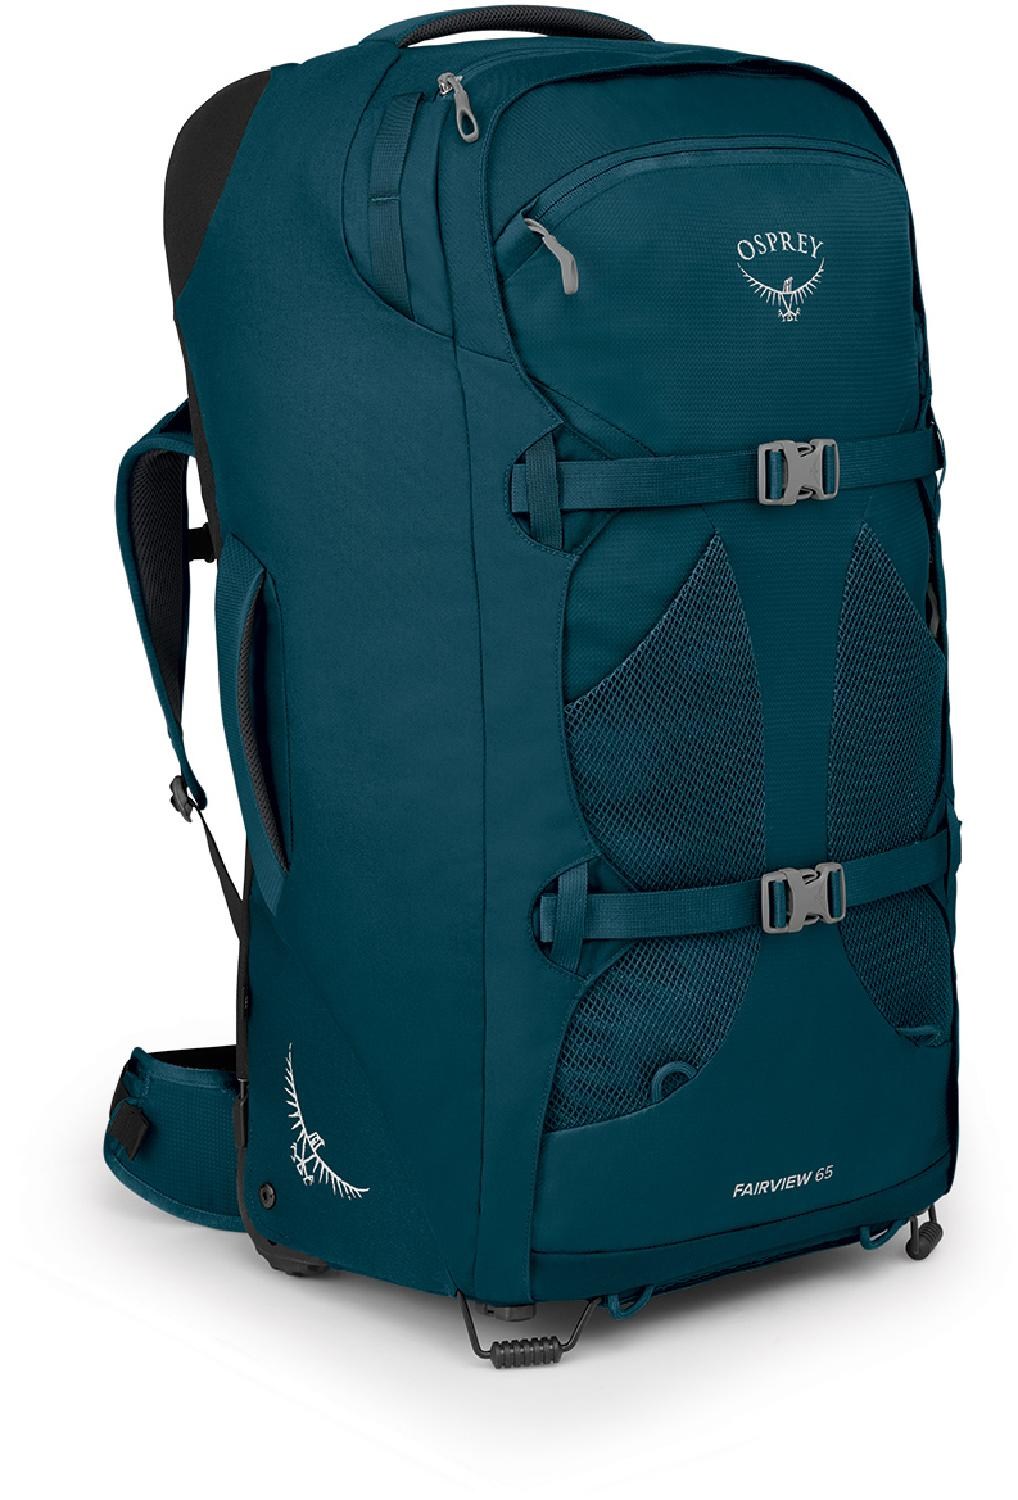 цена Дорожный рюкзак Fairview 65 на колесиках — женский Osprey, синий